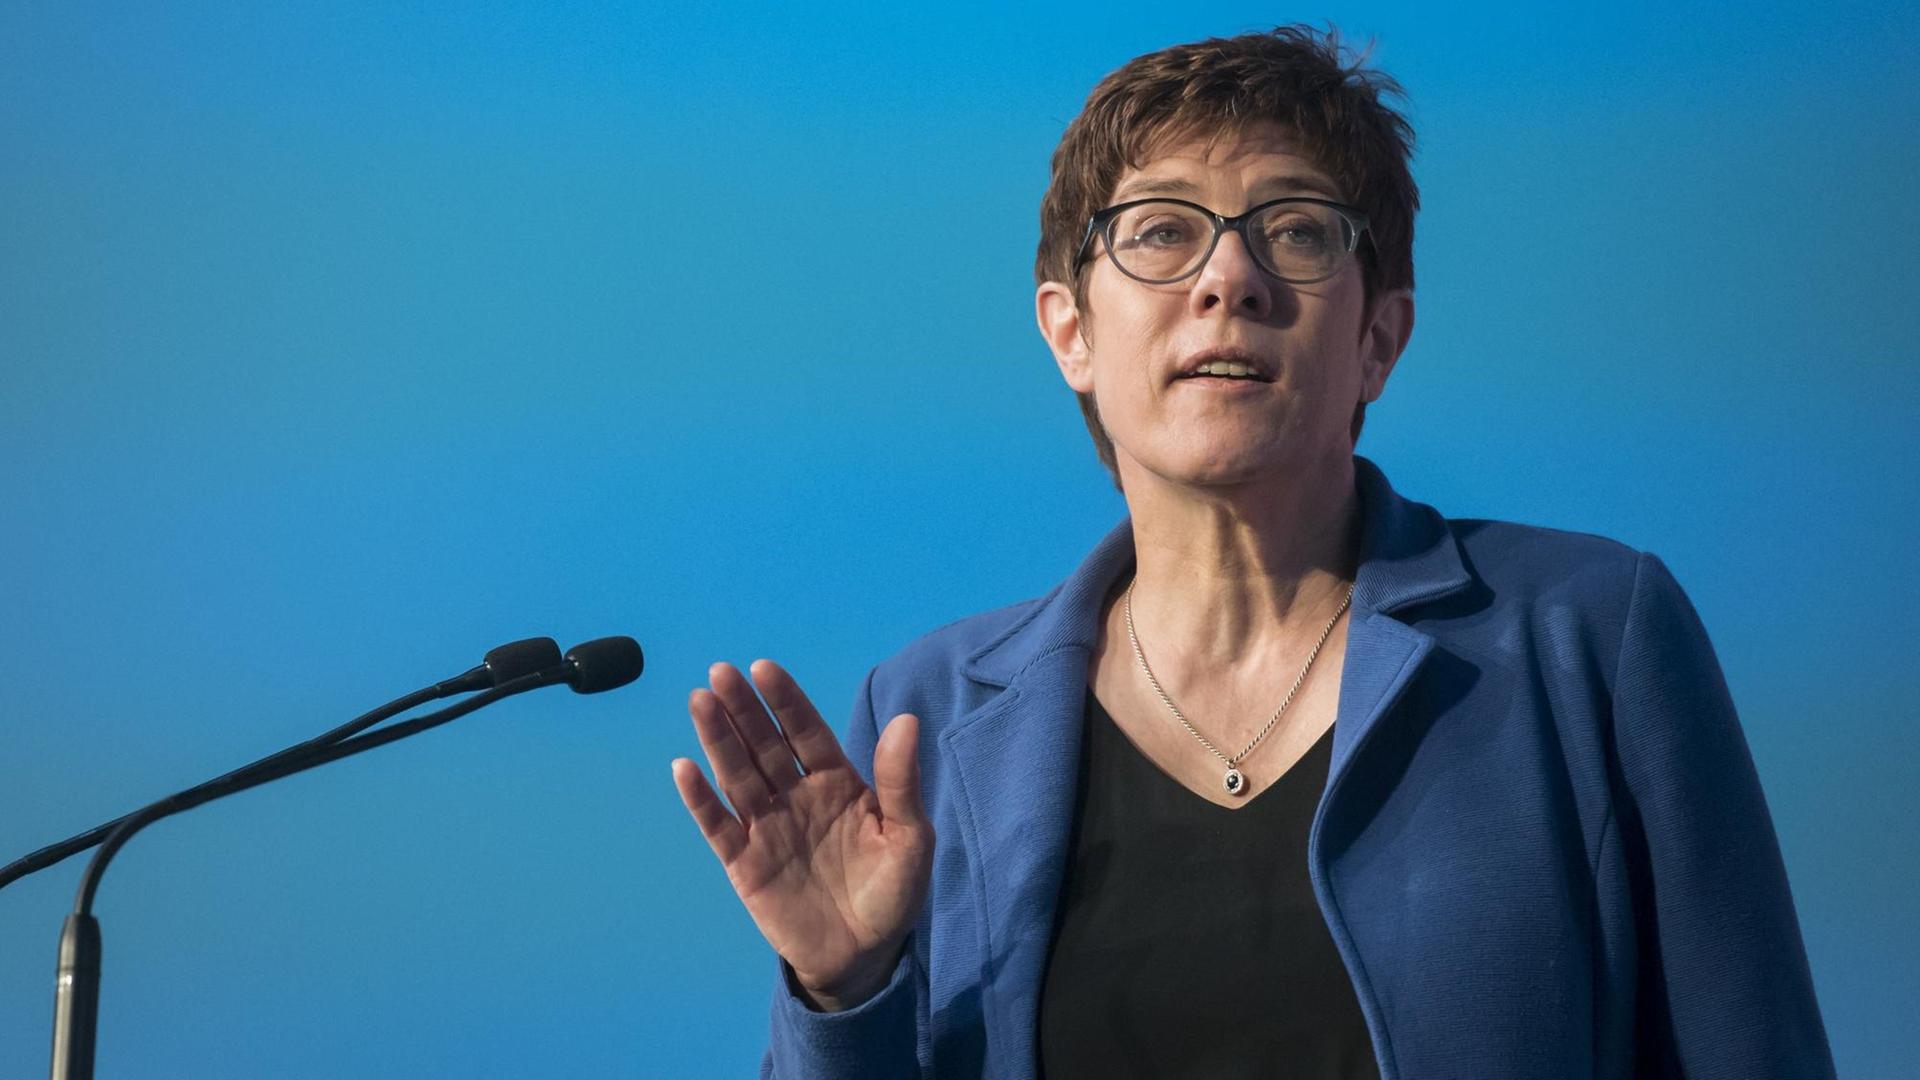 Die CDU-Vorsitzende Annegret Kramp-Karrenbauer